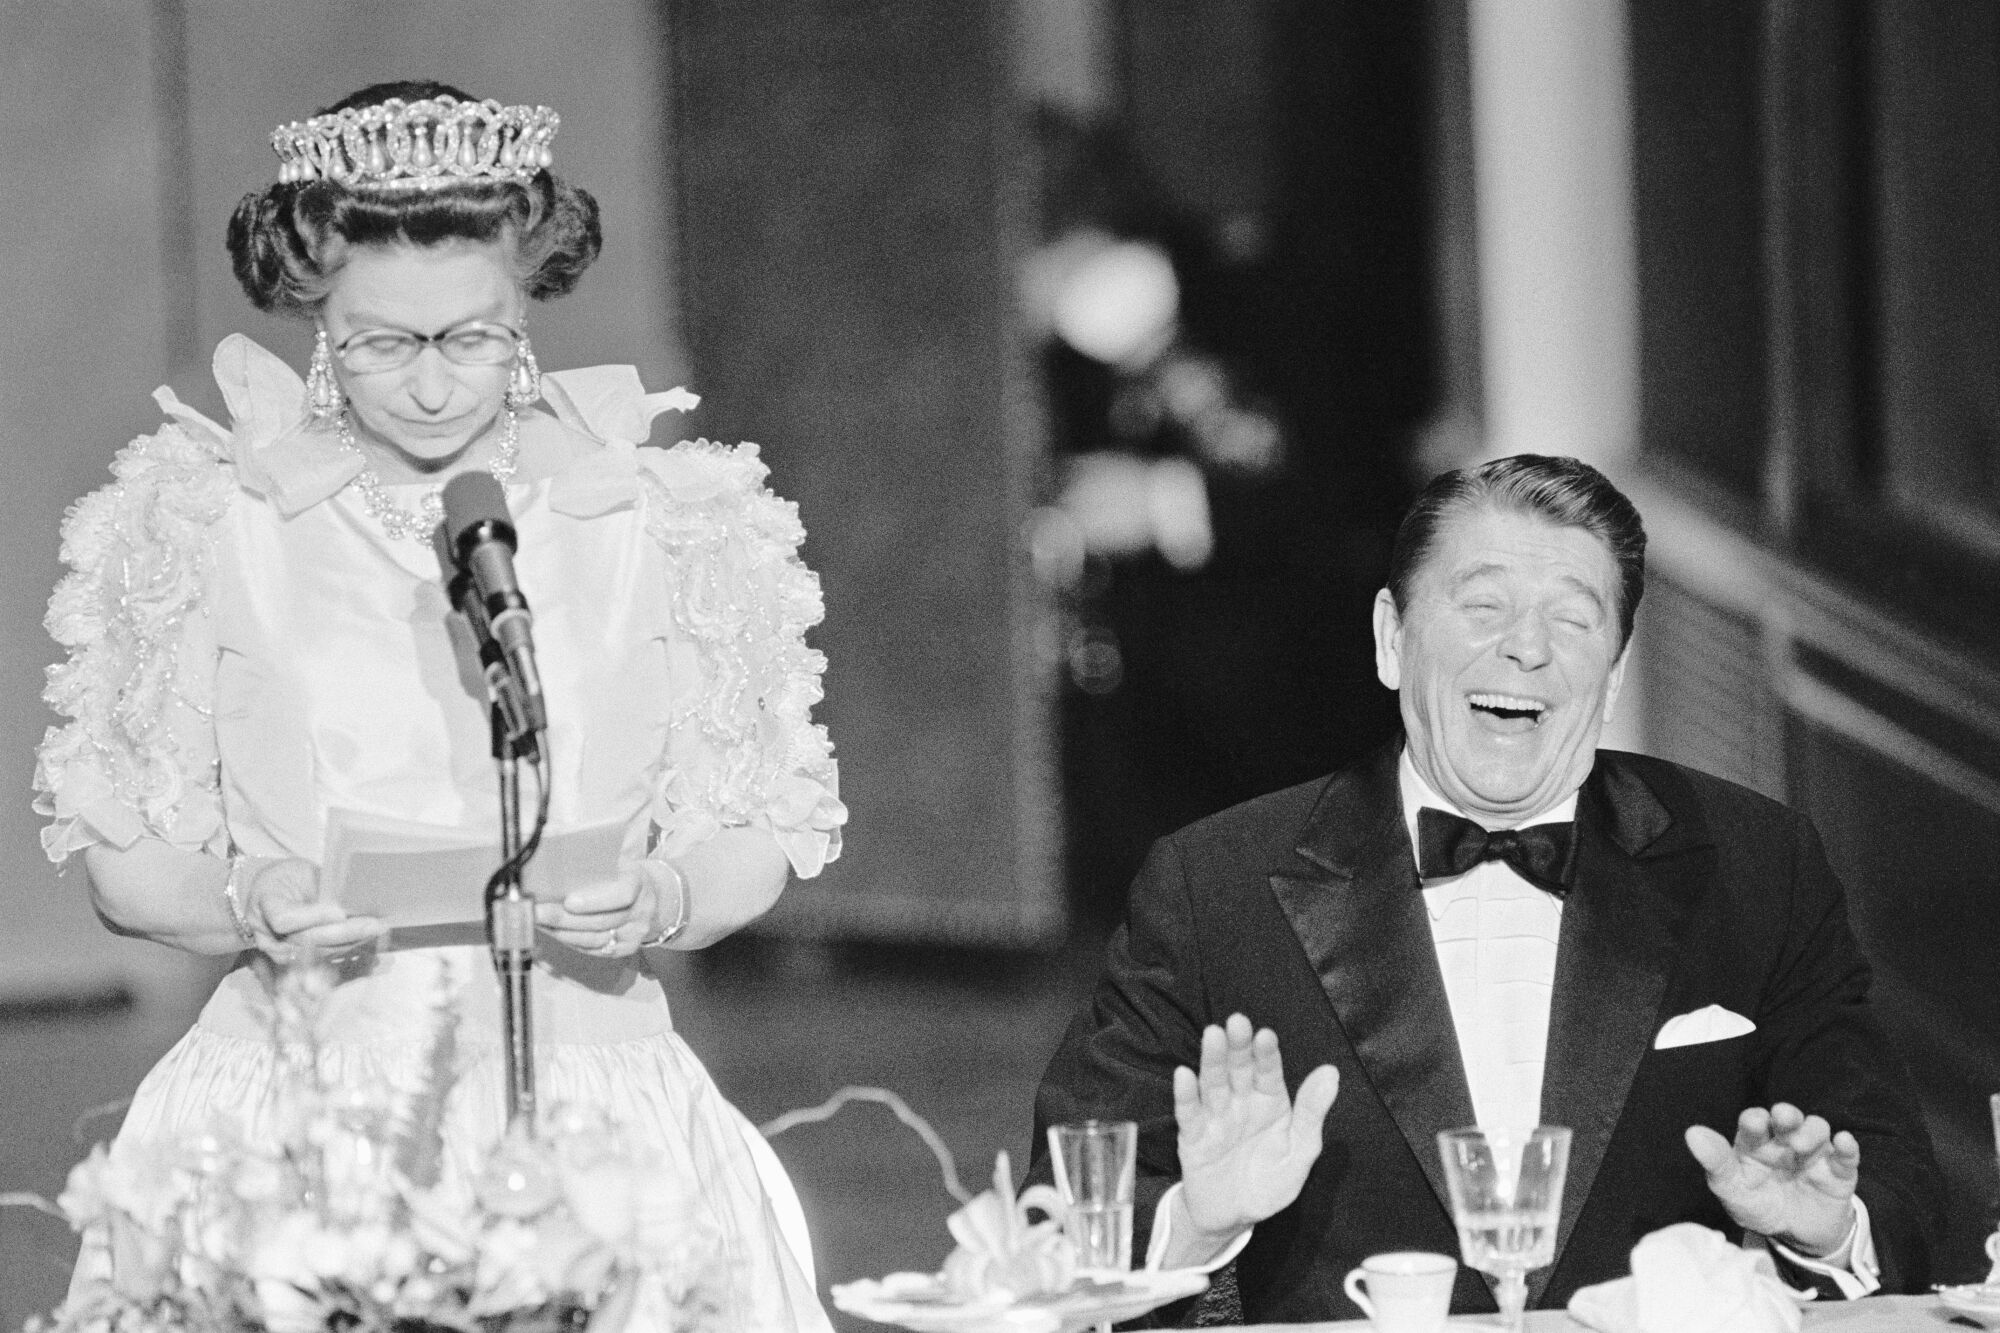 President Reagan laughs following a joke by Queen Elizabeth II.